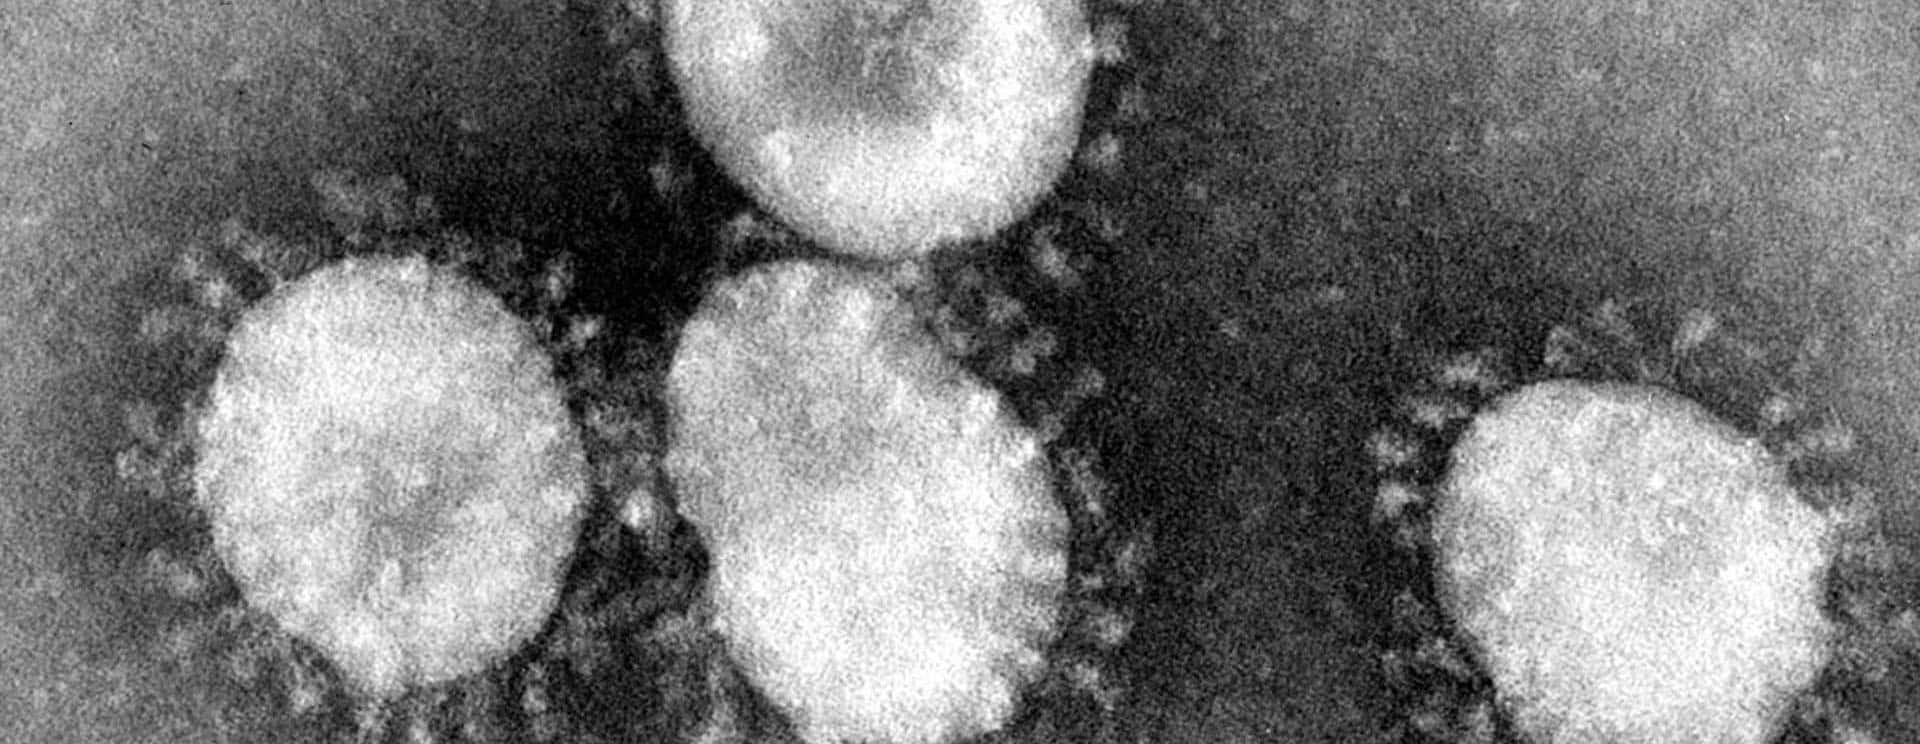 coronaviruses-jpg-61